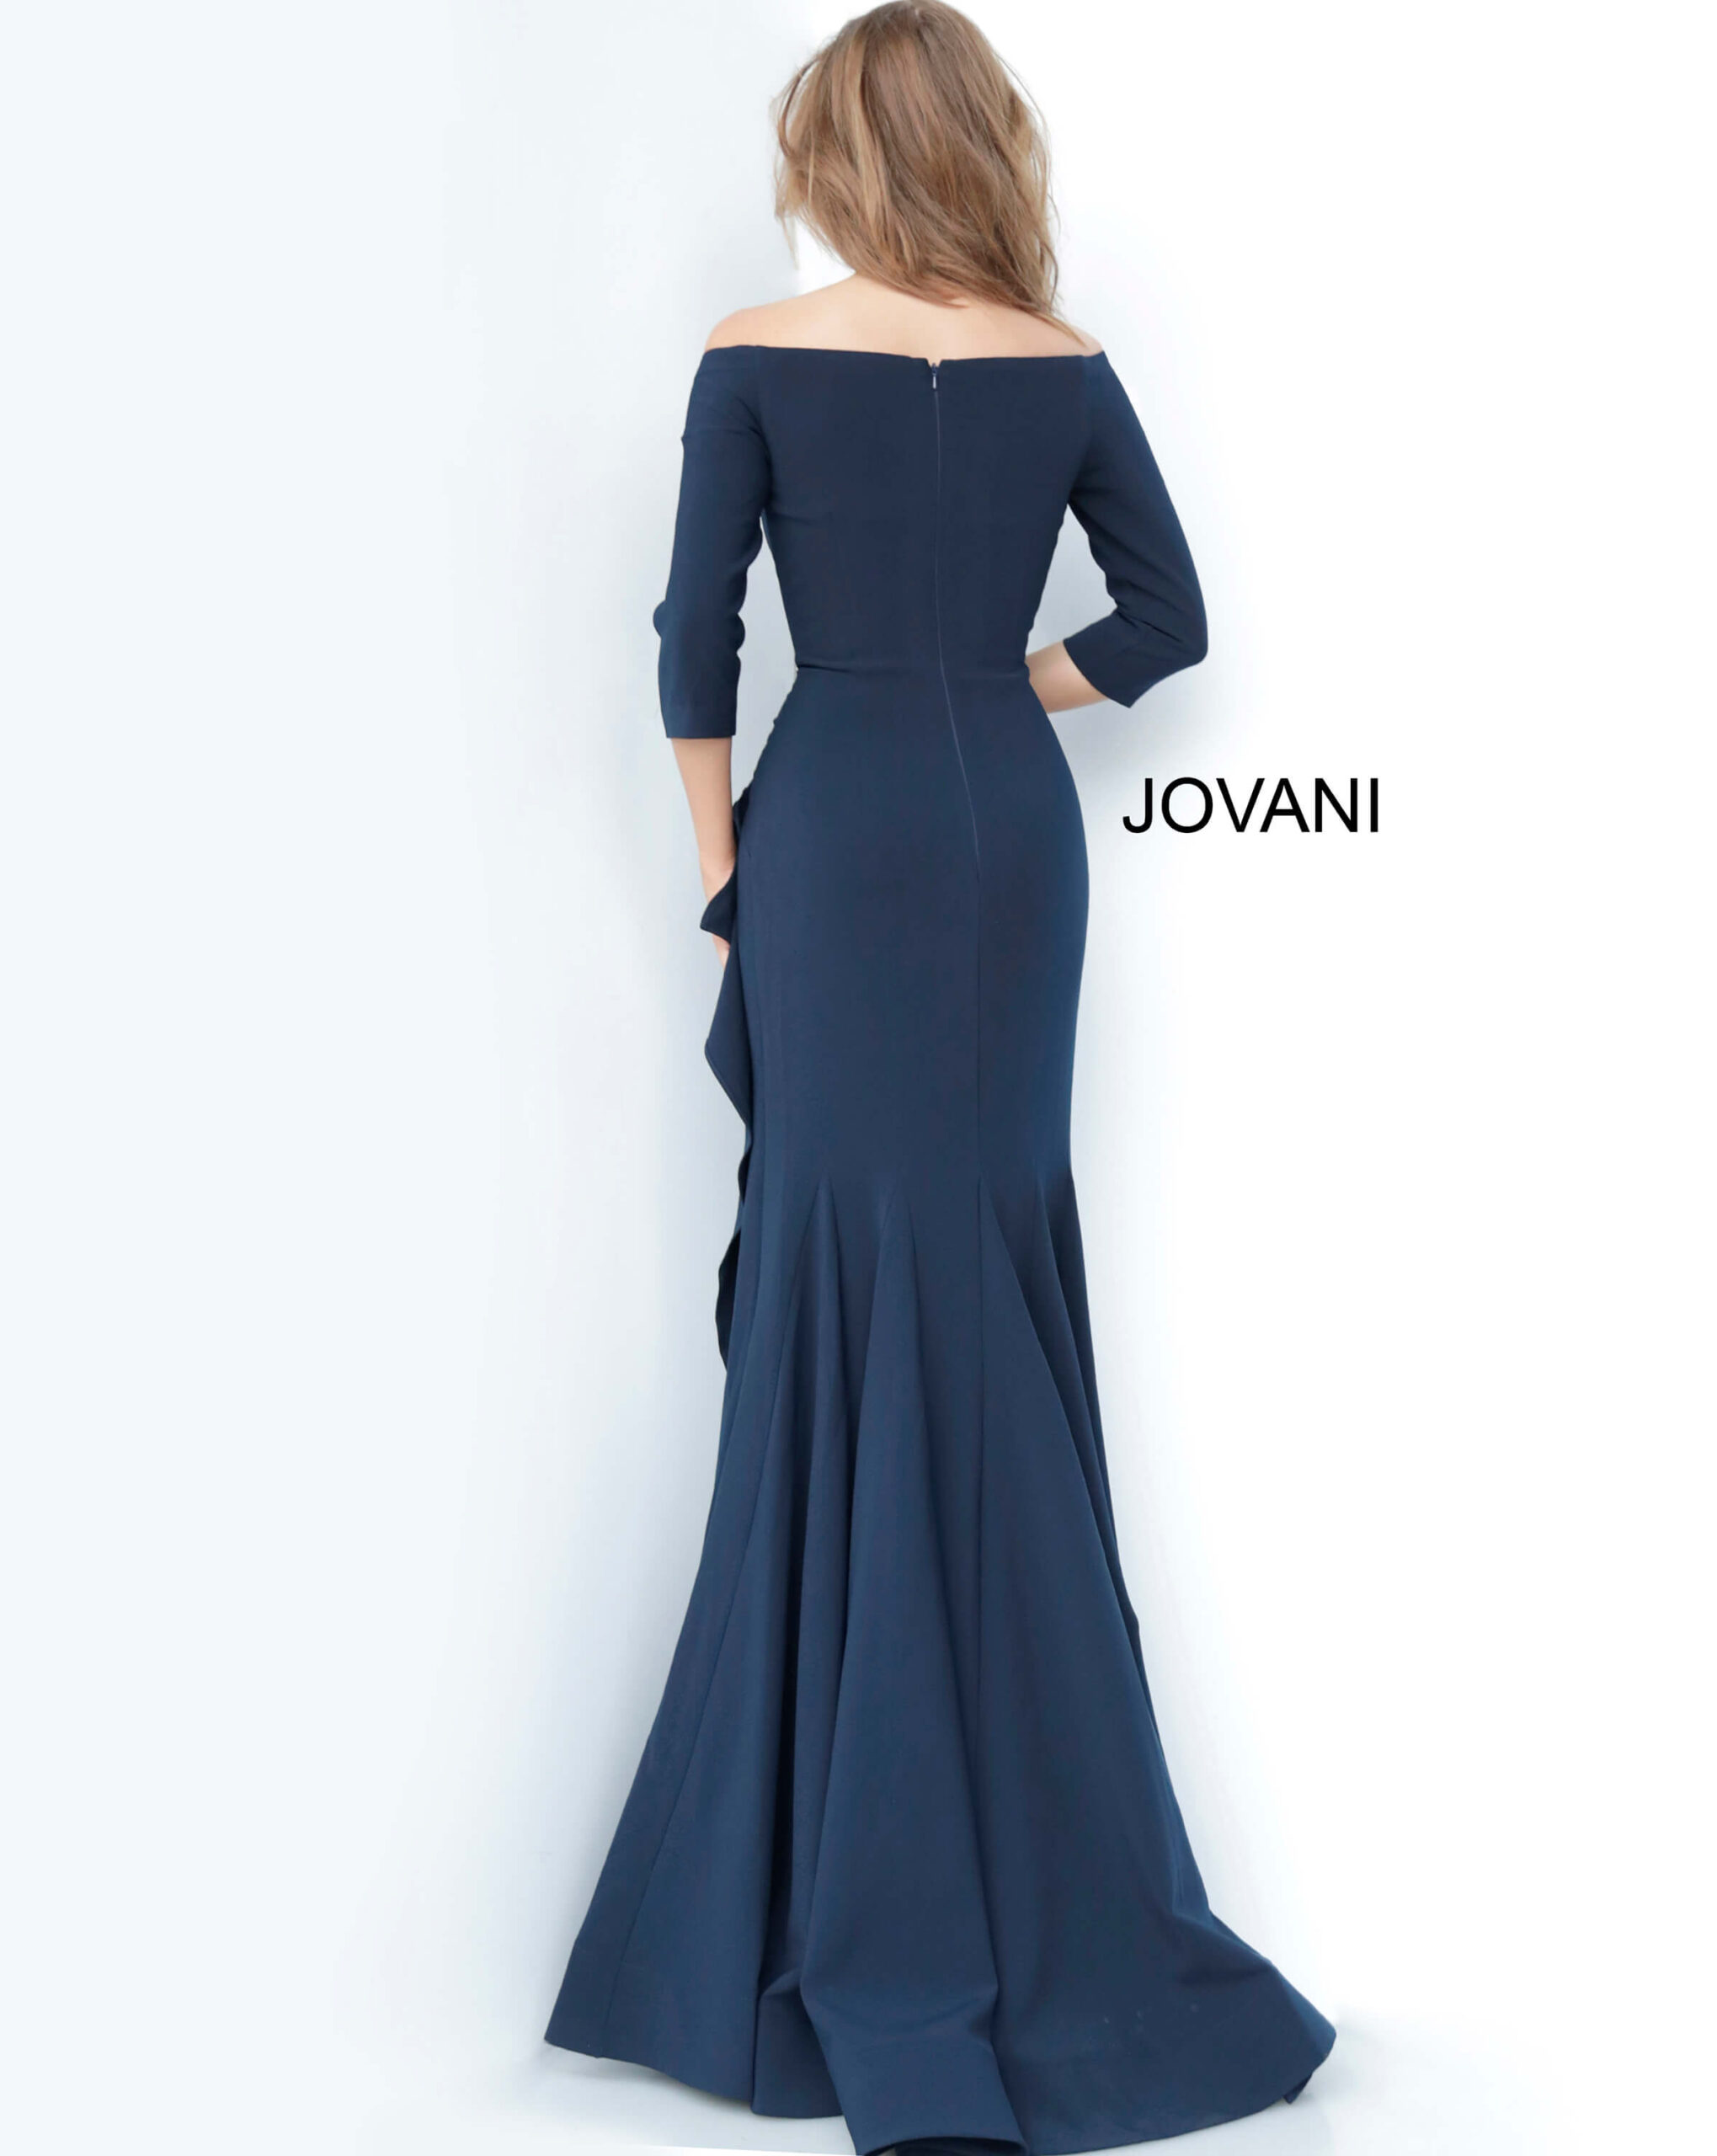 Jovani 00446 Off the Shoulder Ruched Dress